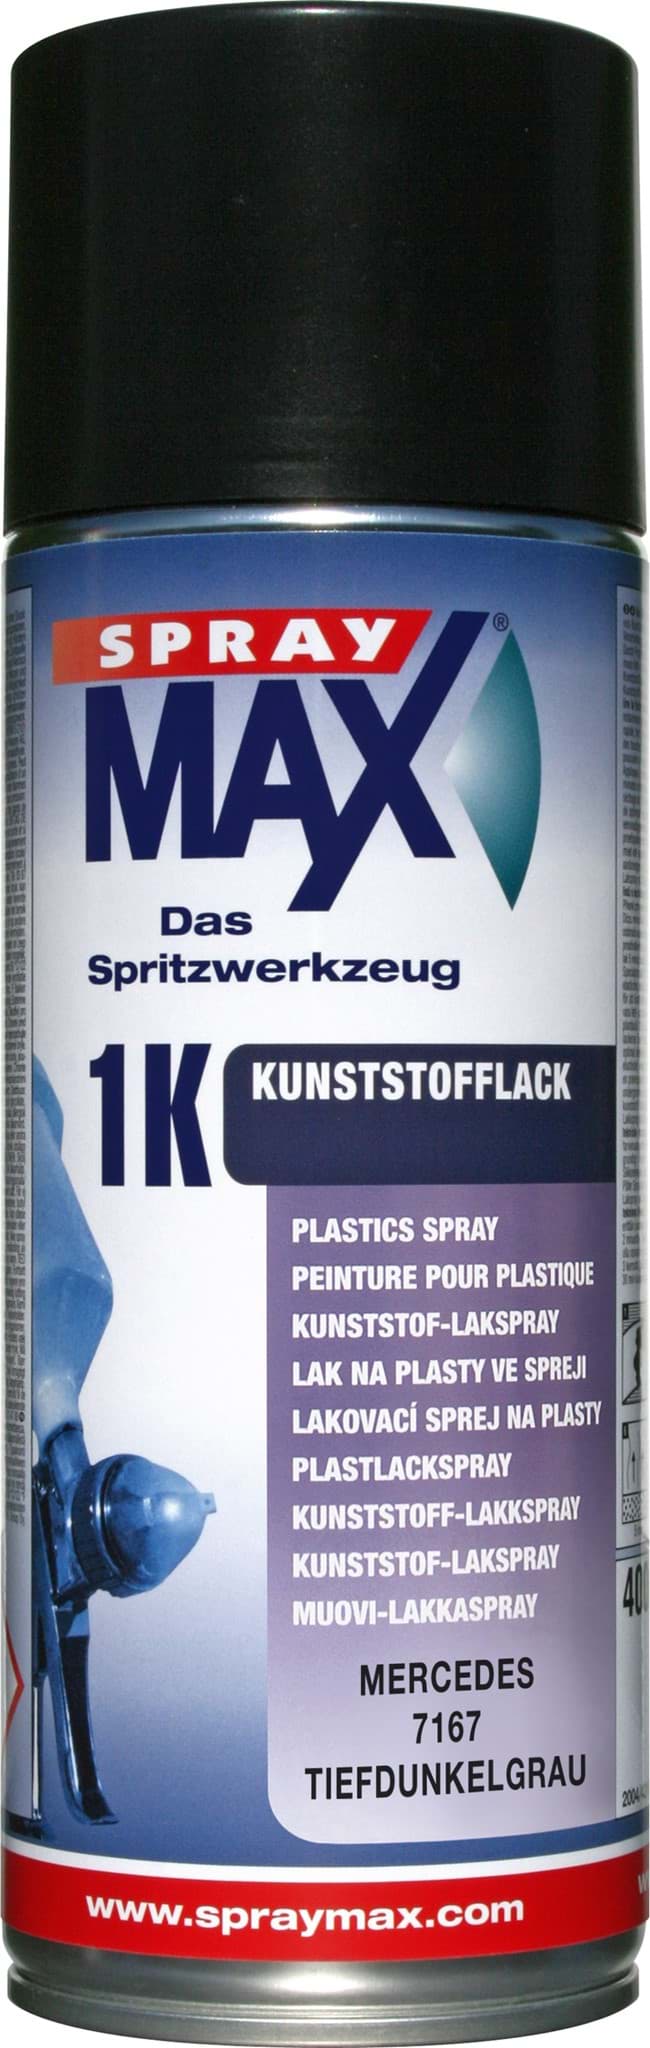 Afbeelding van SprayMax 1K Kunststofflack Mercedes 7167 tiefdunkelgrau